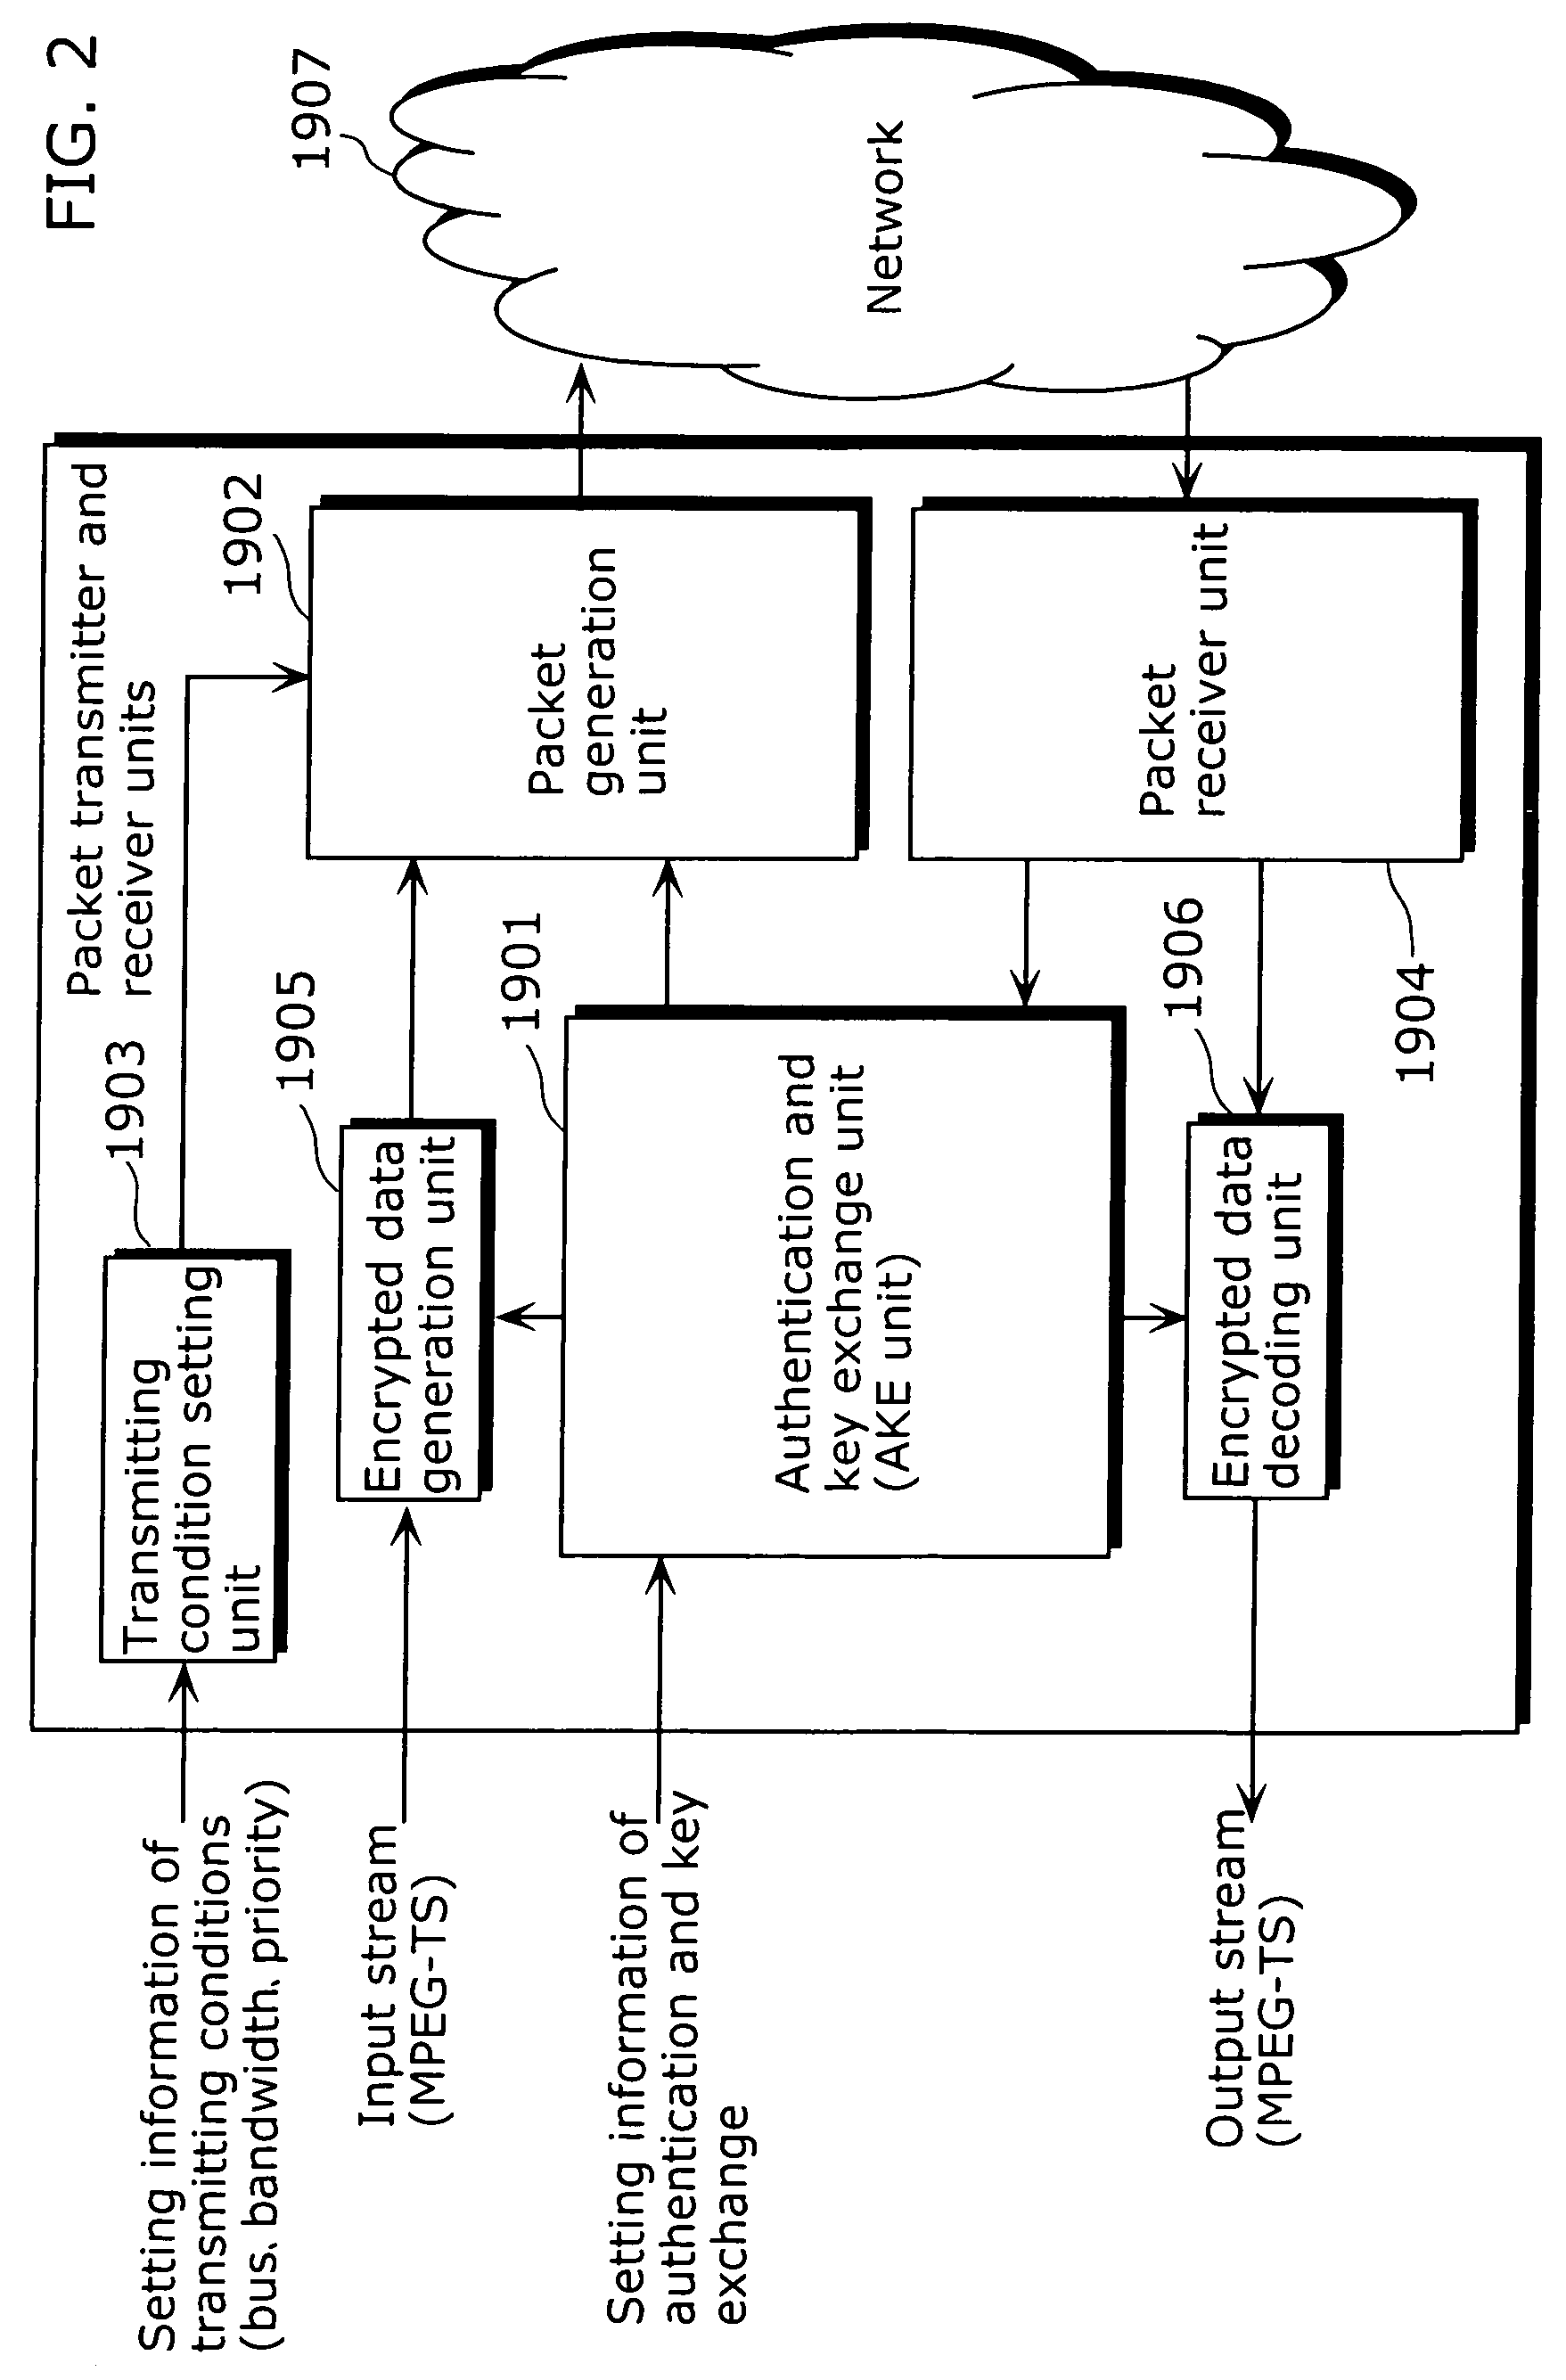 Packet transmitter apparatus